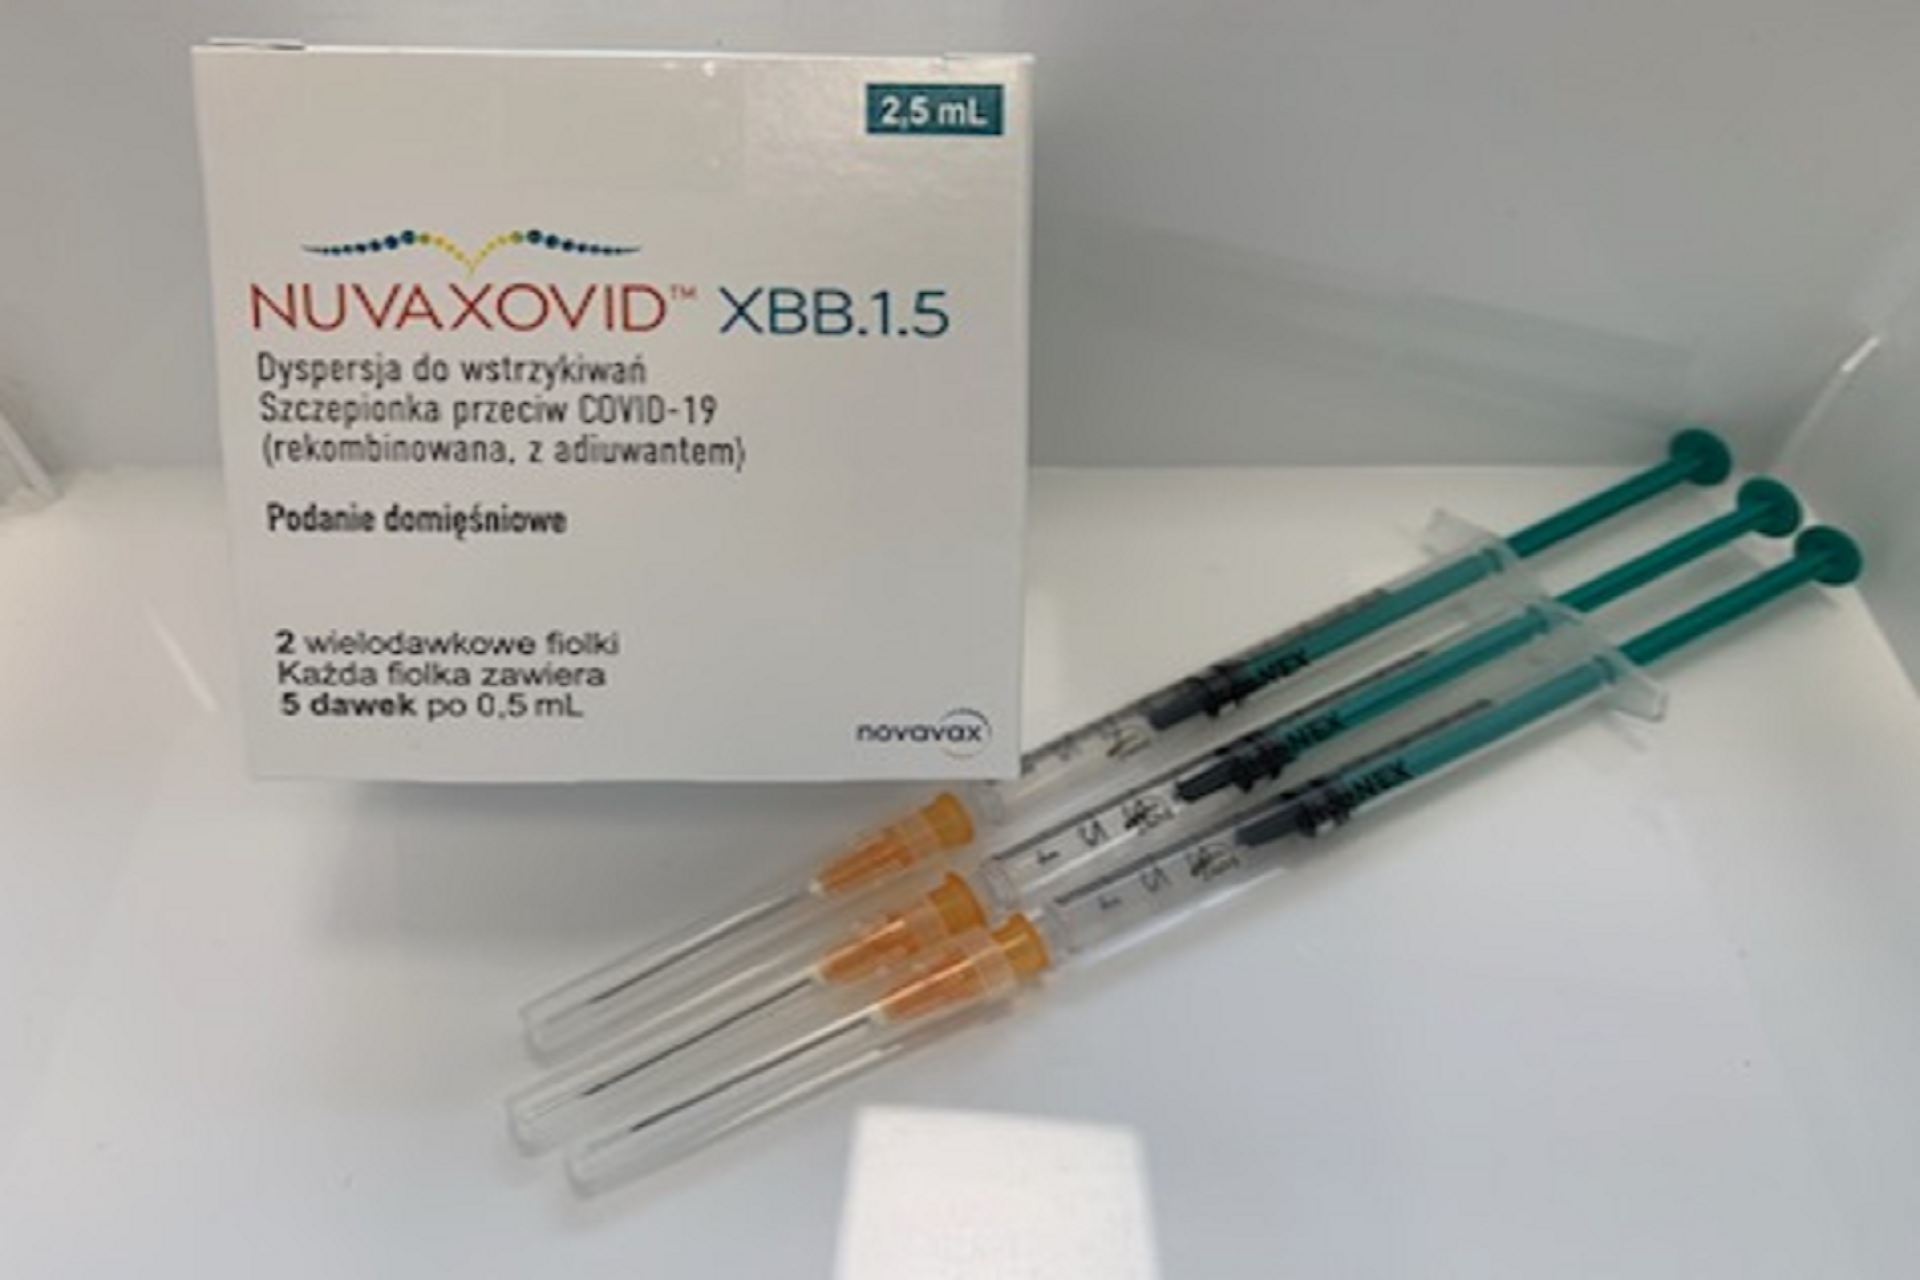 Szczepienia przeciw COVID-19